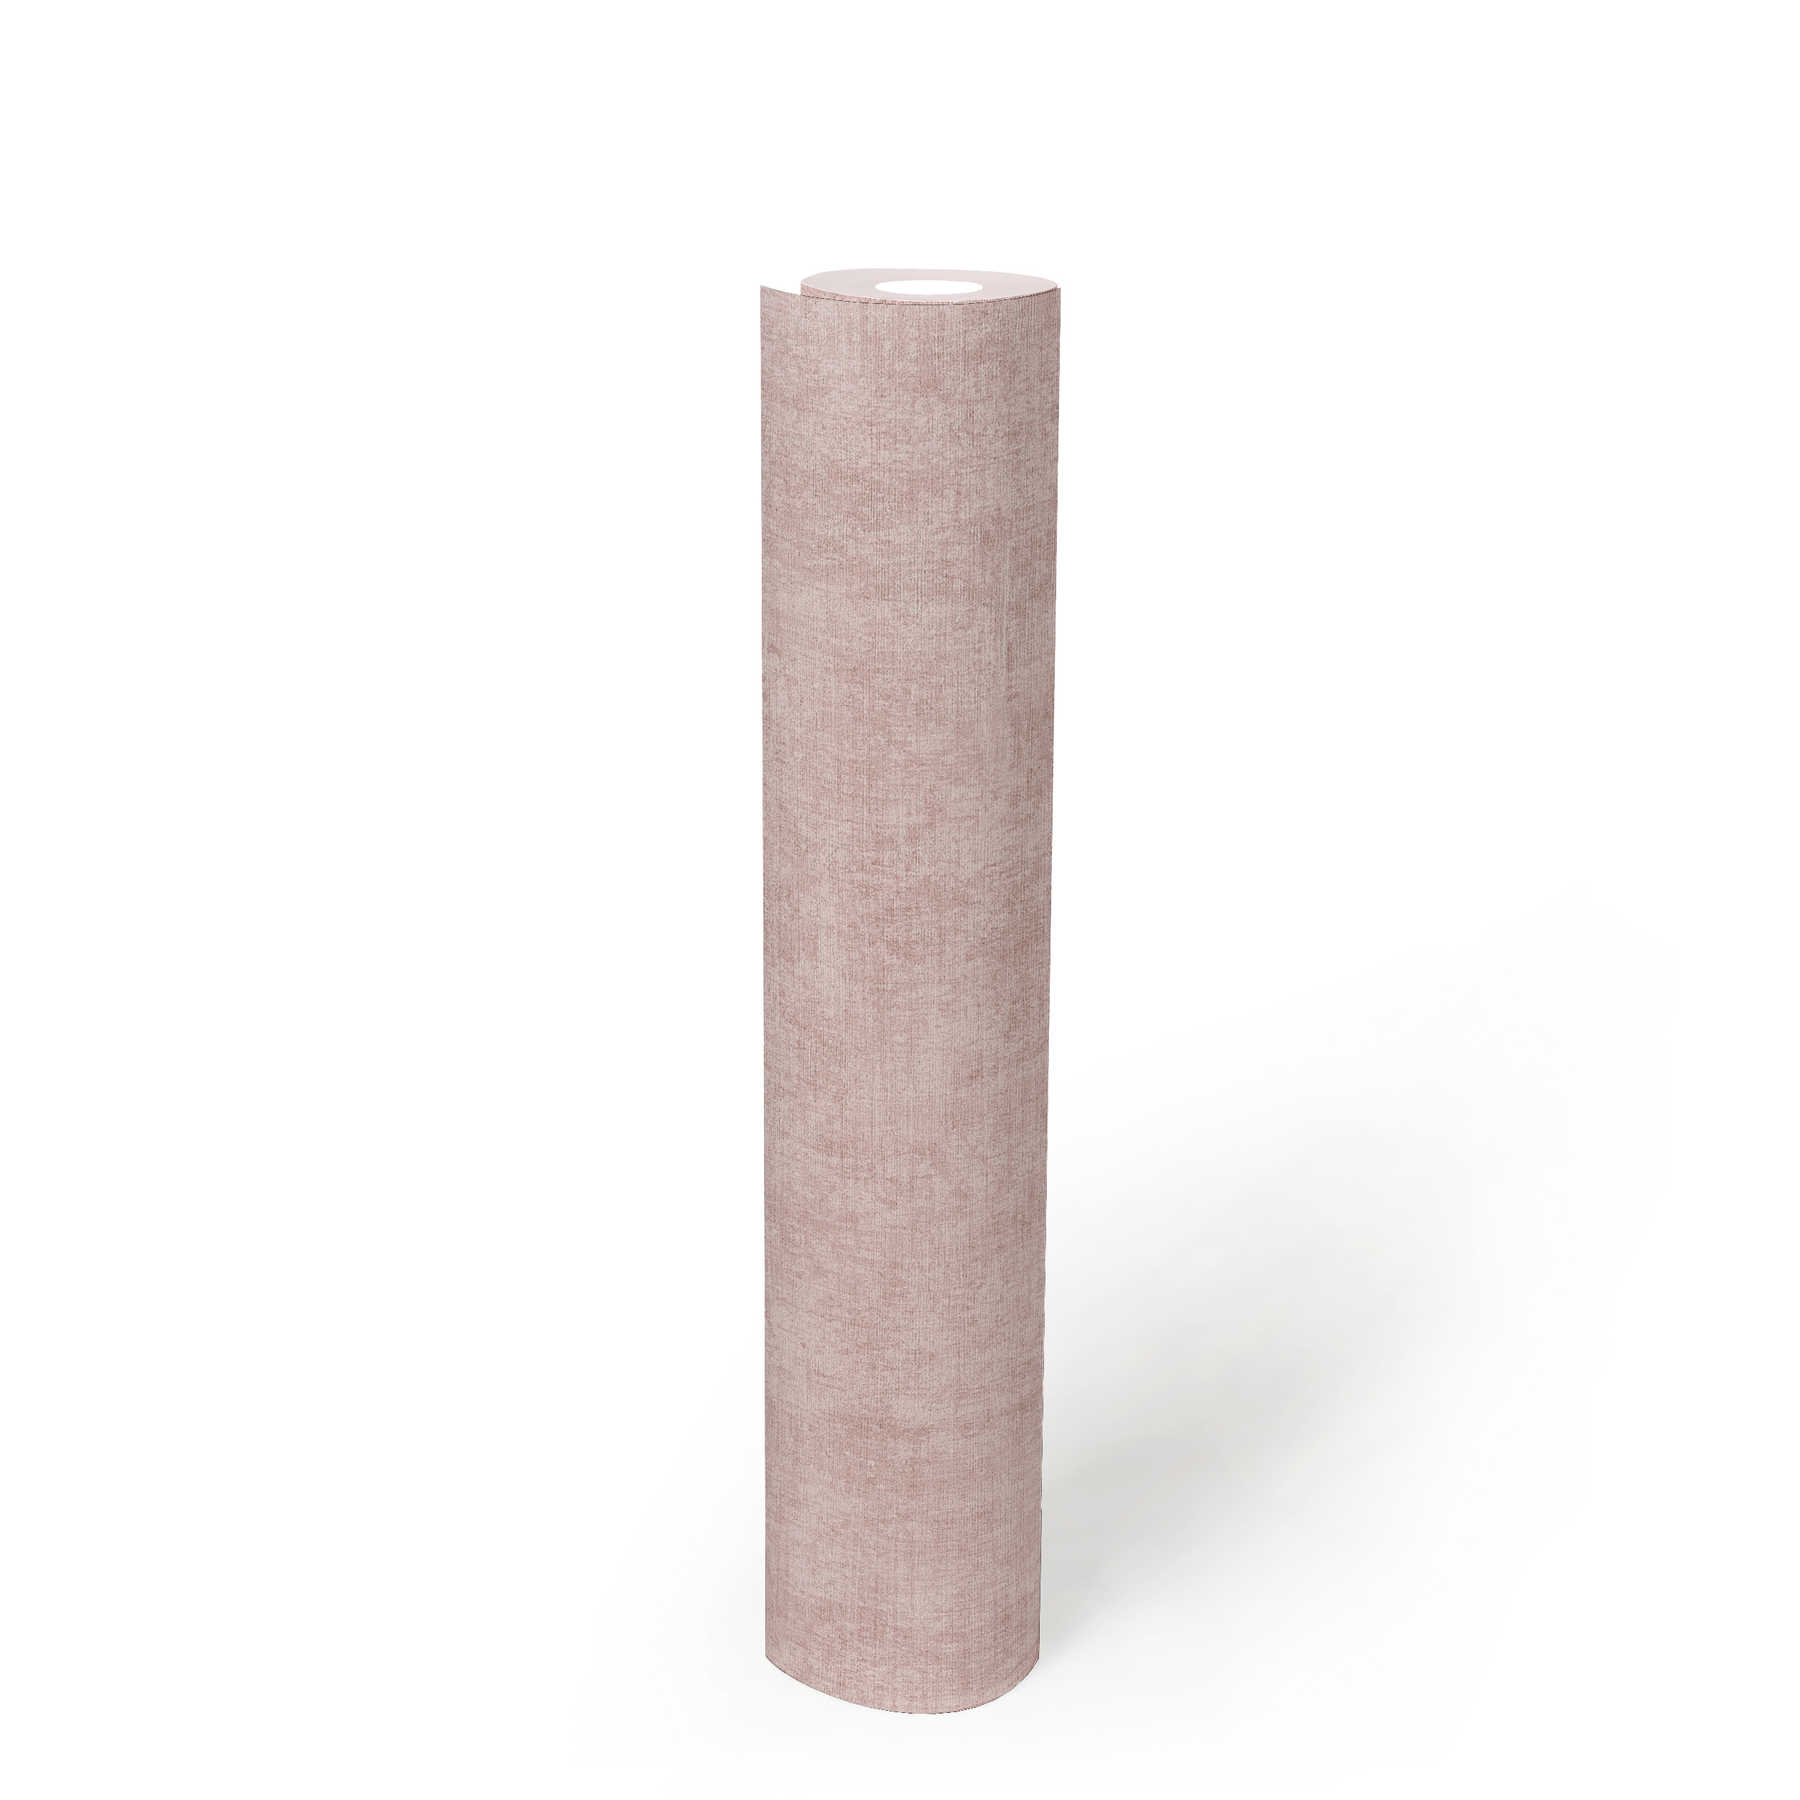             Carta da parati in tessuto non tessuto a tinta unita, con motivo screziato e strutturato - rosa
        